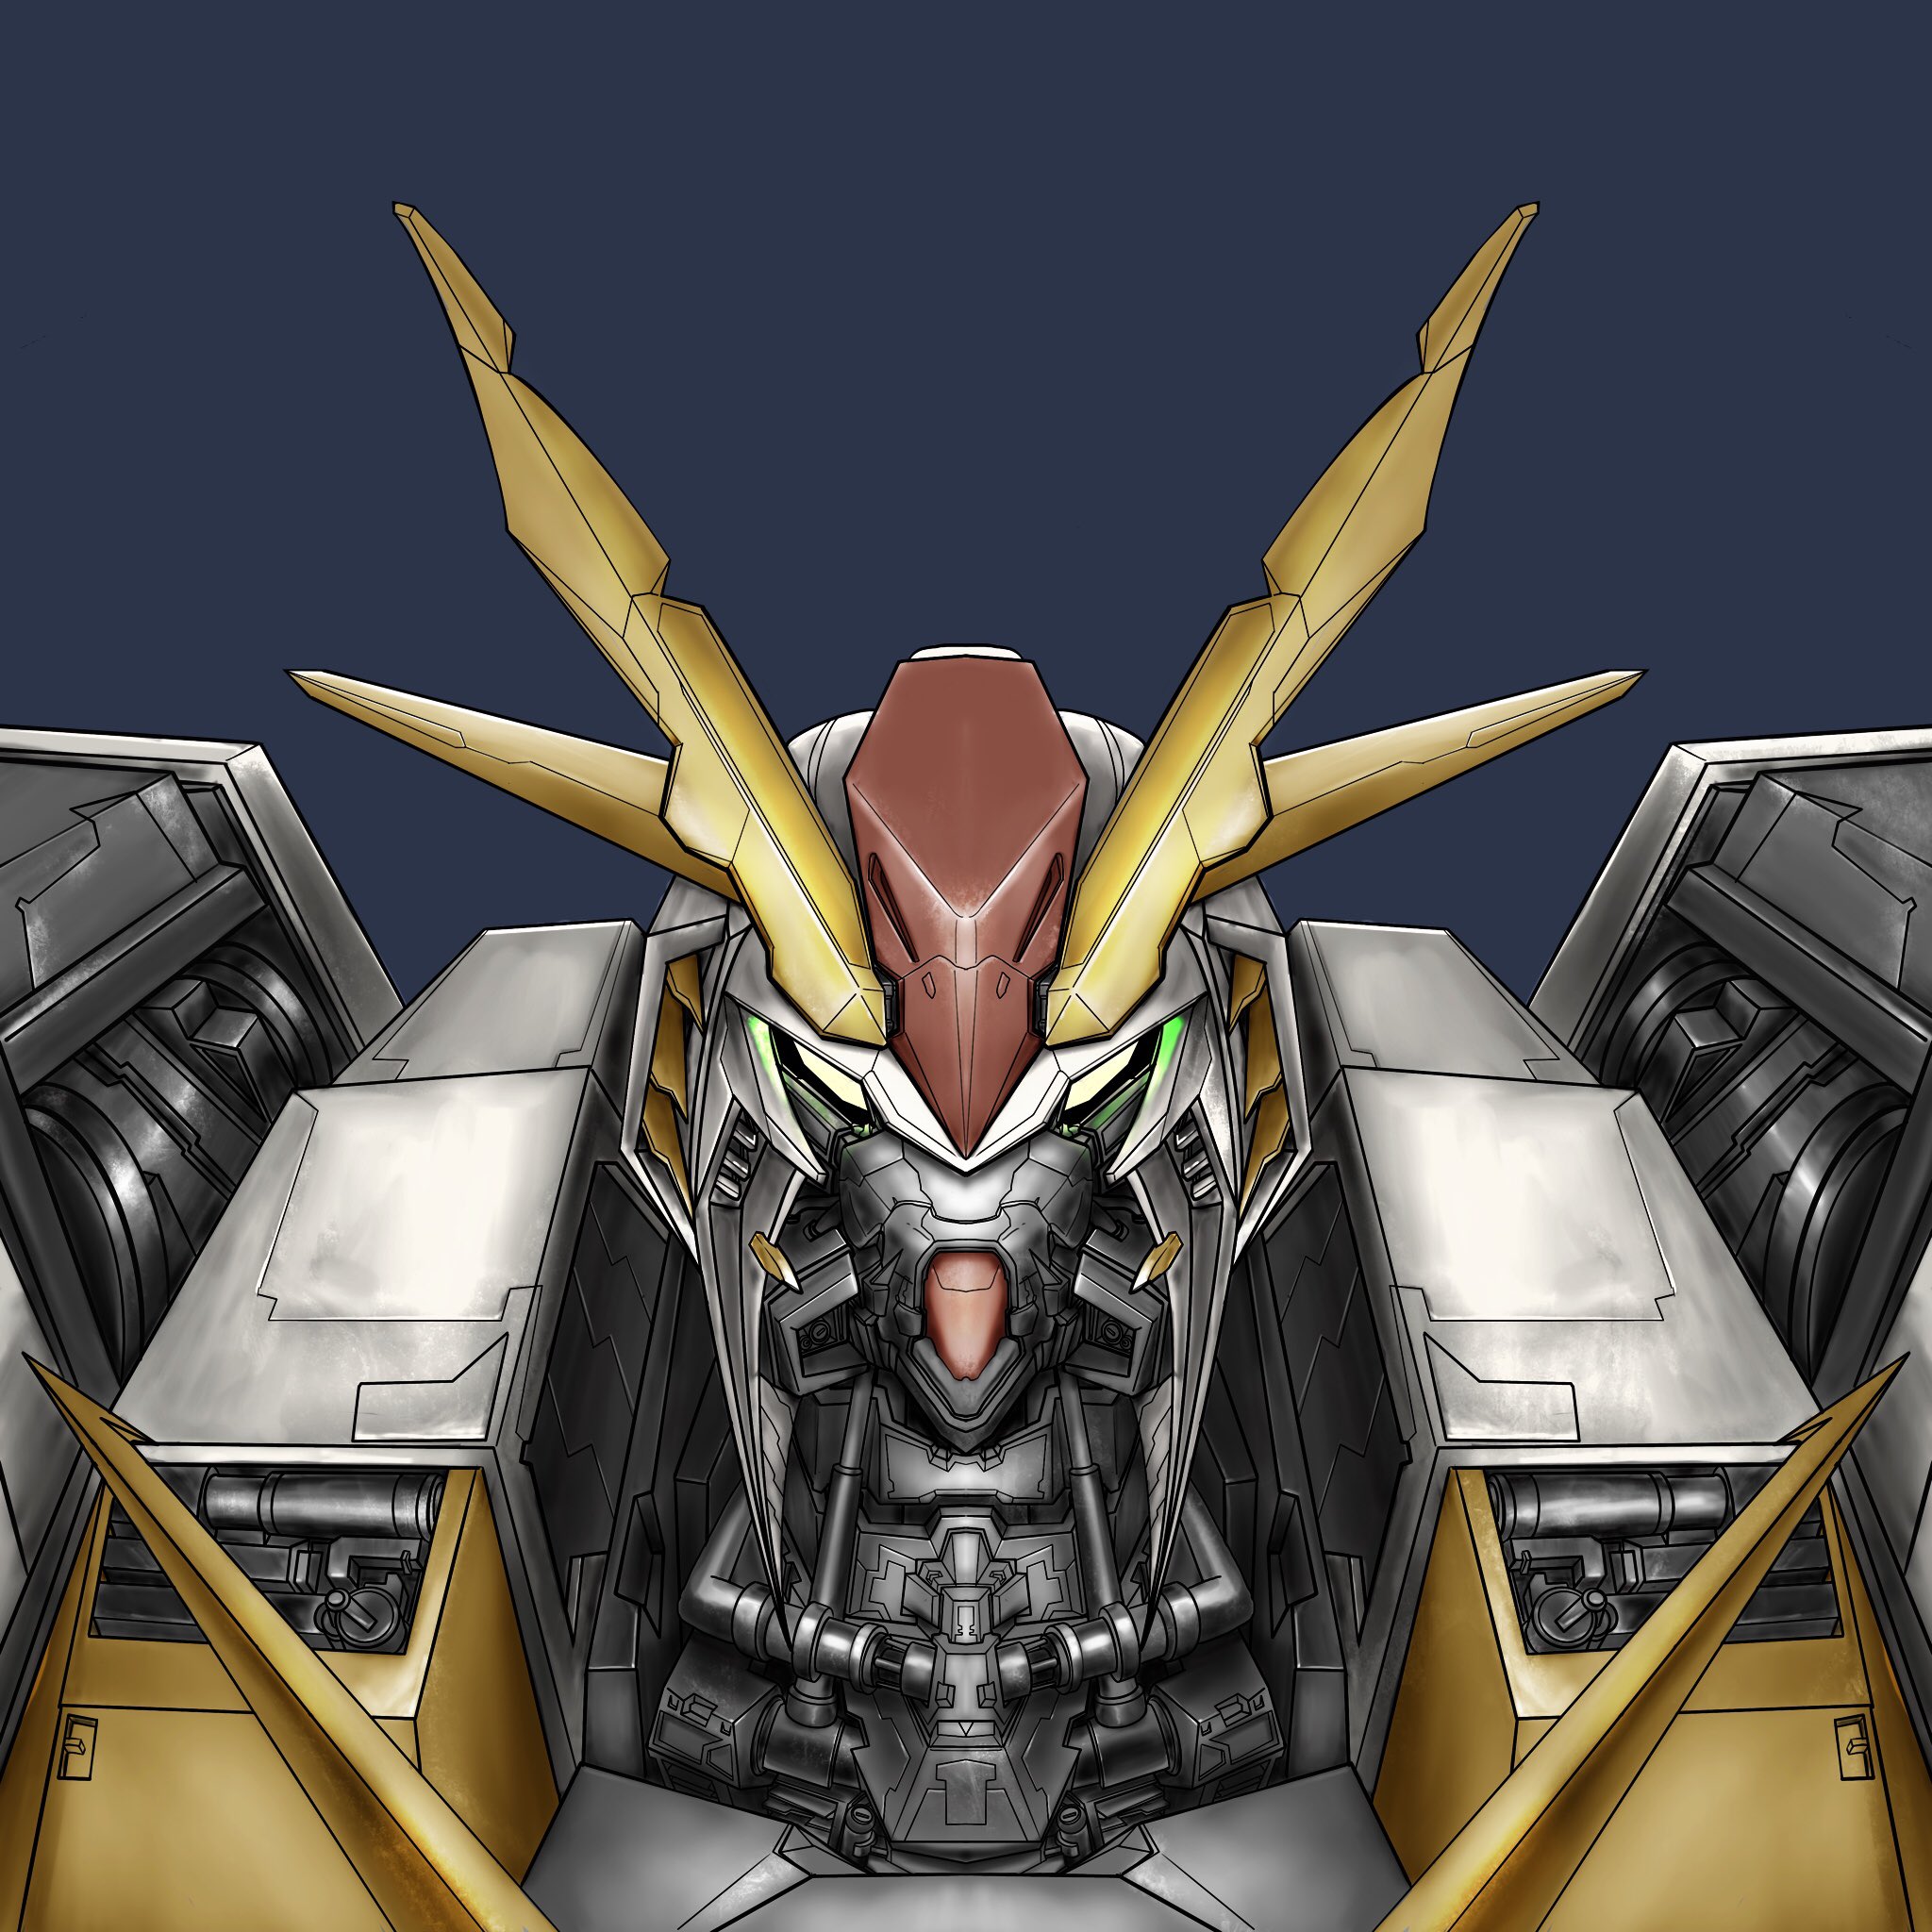 Faiz Andrevano XI Gundam #art #drawing #anime #gundam #fanart #illustration